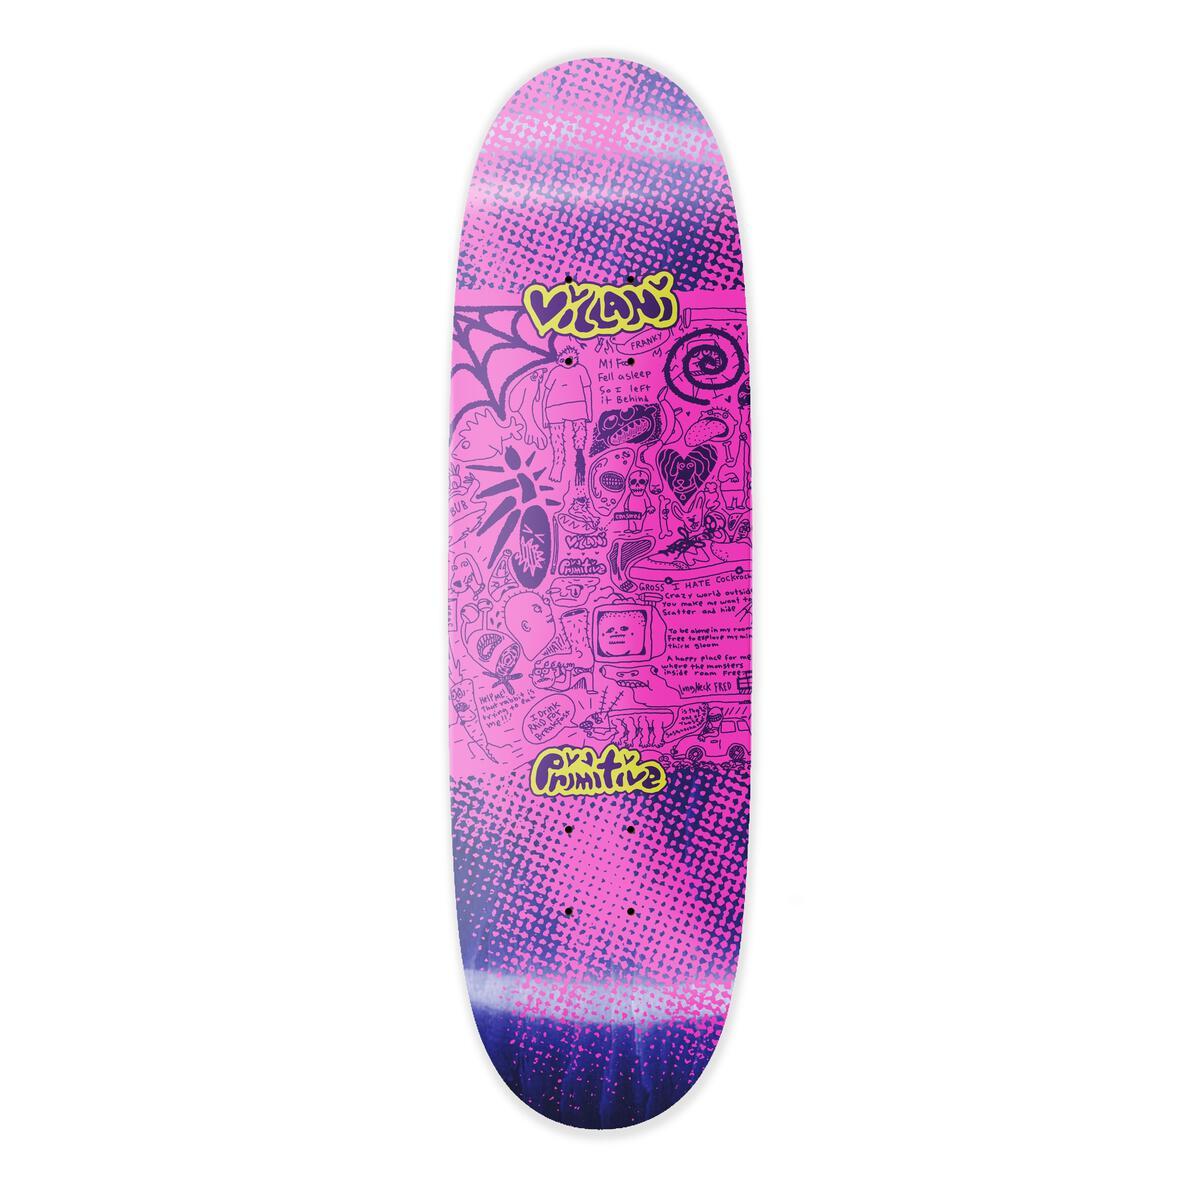 Primitive Villani Scatter Purple 9.125" Egg Shaped Skateboard Deck